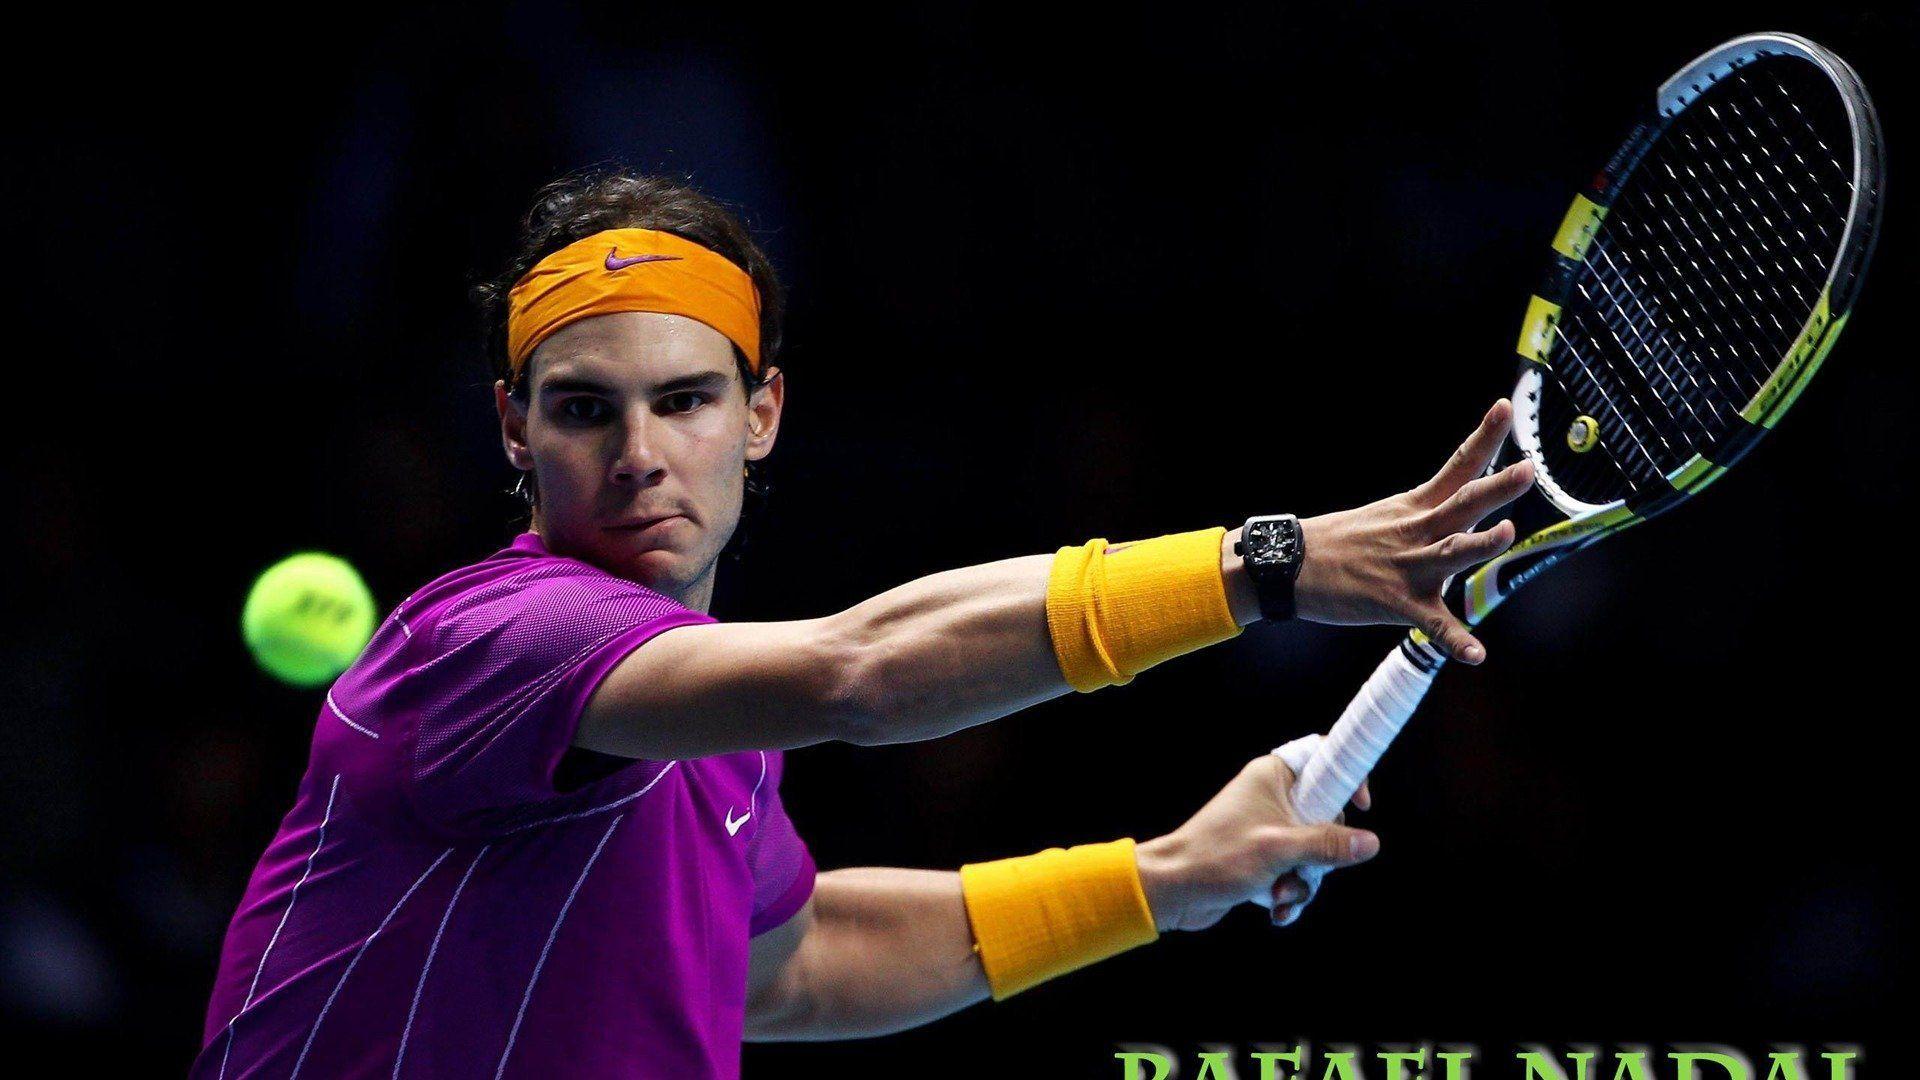 Rafael Nadal Tennis Wallpaper. Epic Car Wallpaper